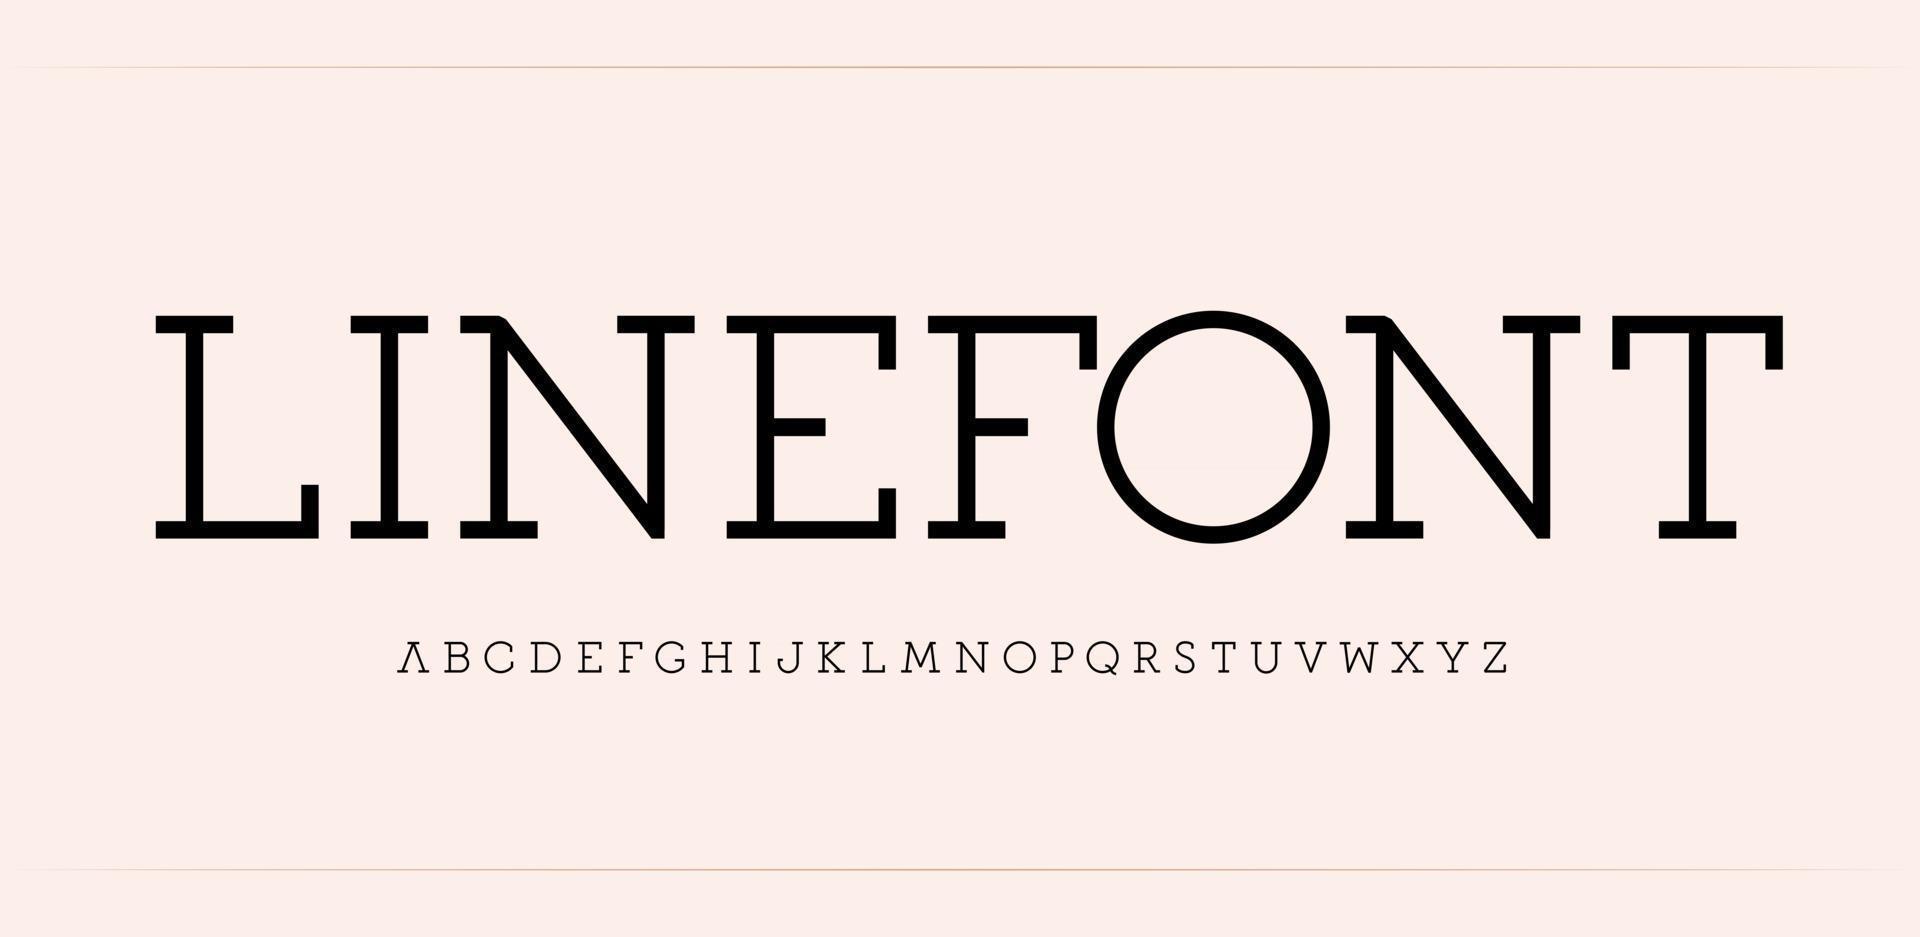 Alfabeto serif simple de la línea. fuente fina y elegante para logotipo moderno, título, monograma y letras. Letras de estilo clásico moderno mínimo, diseño tipográfico vectorial. vector